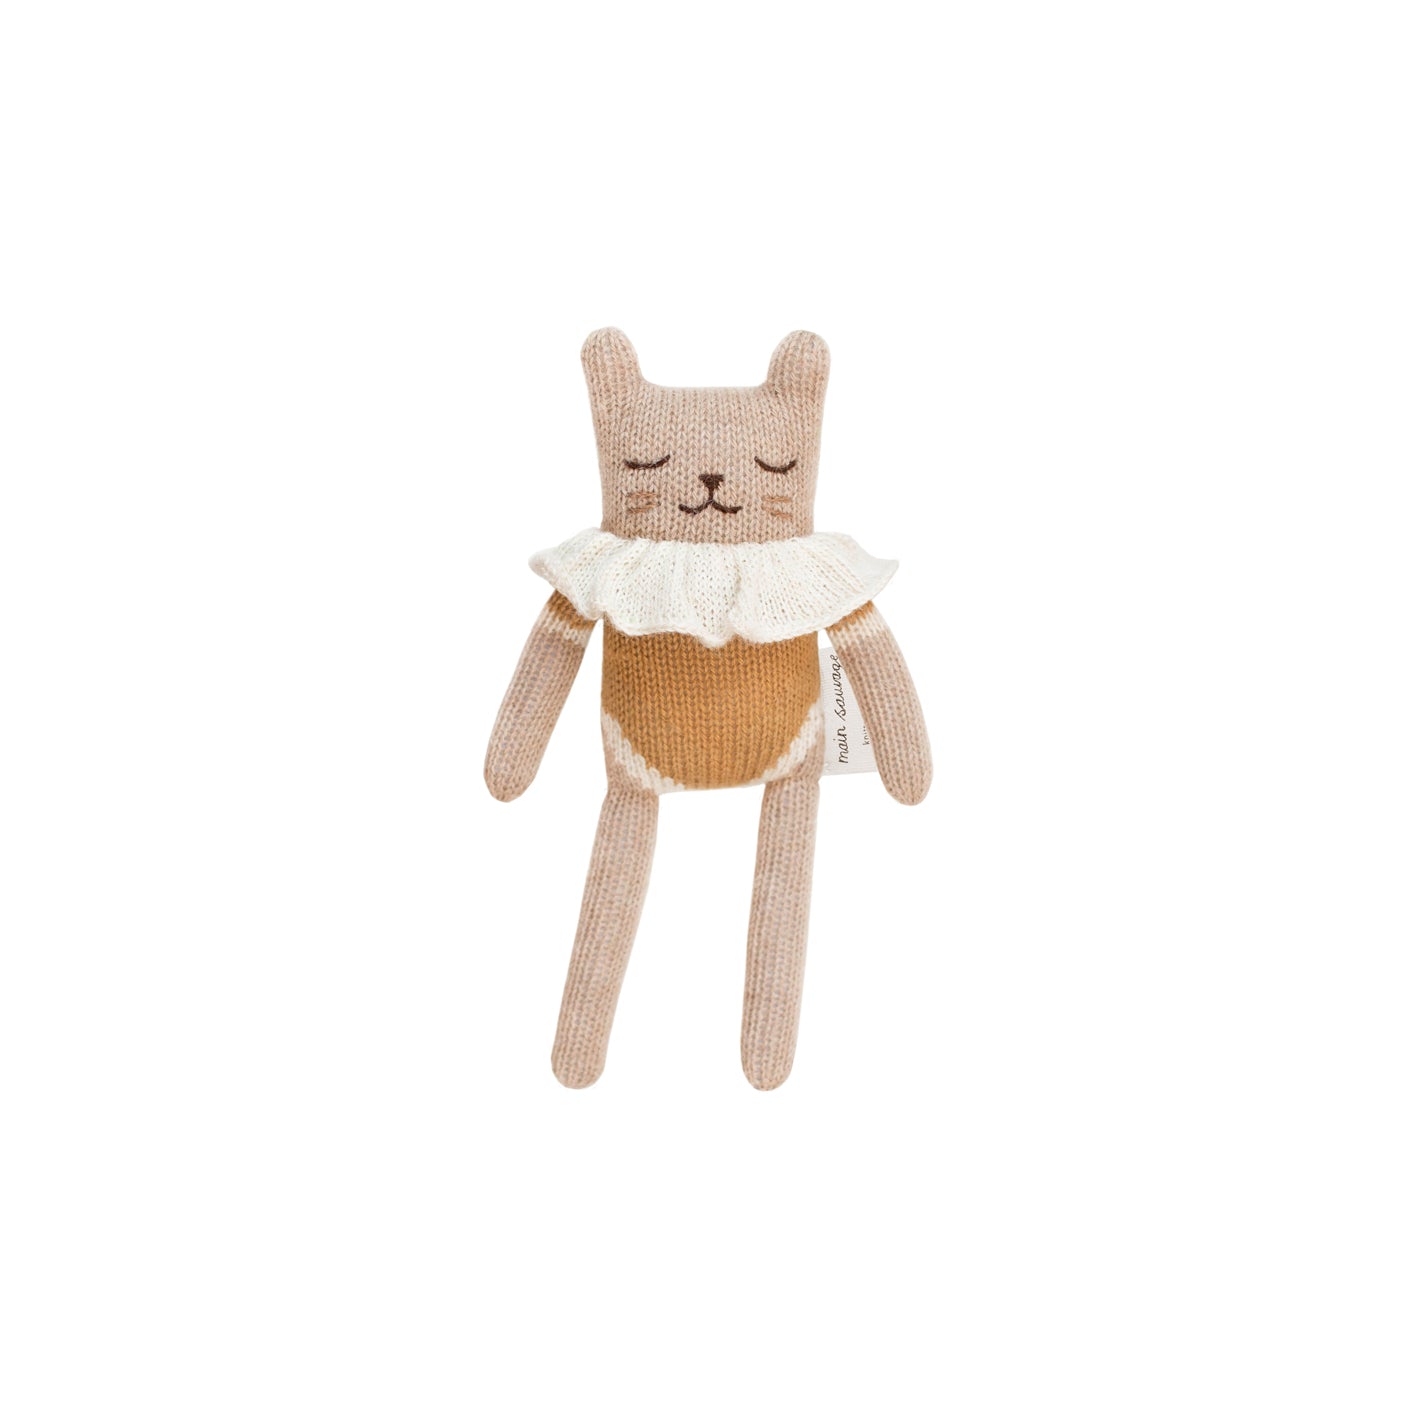 Kitten Knit Toy- Ochre Bodysuit